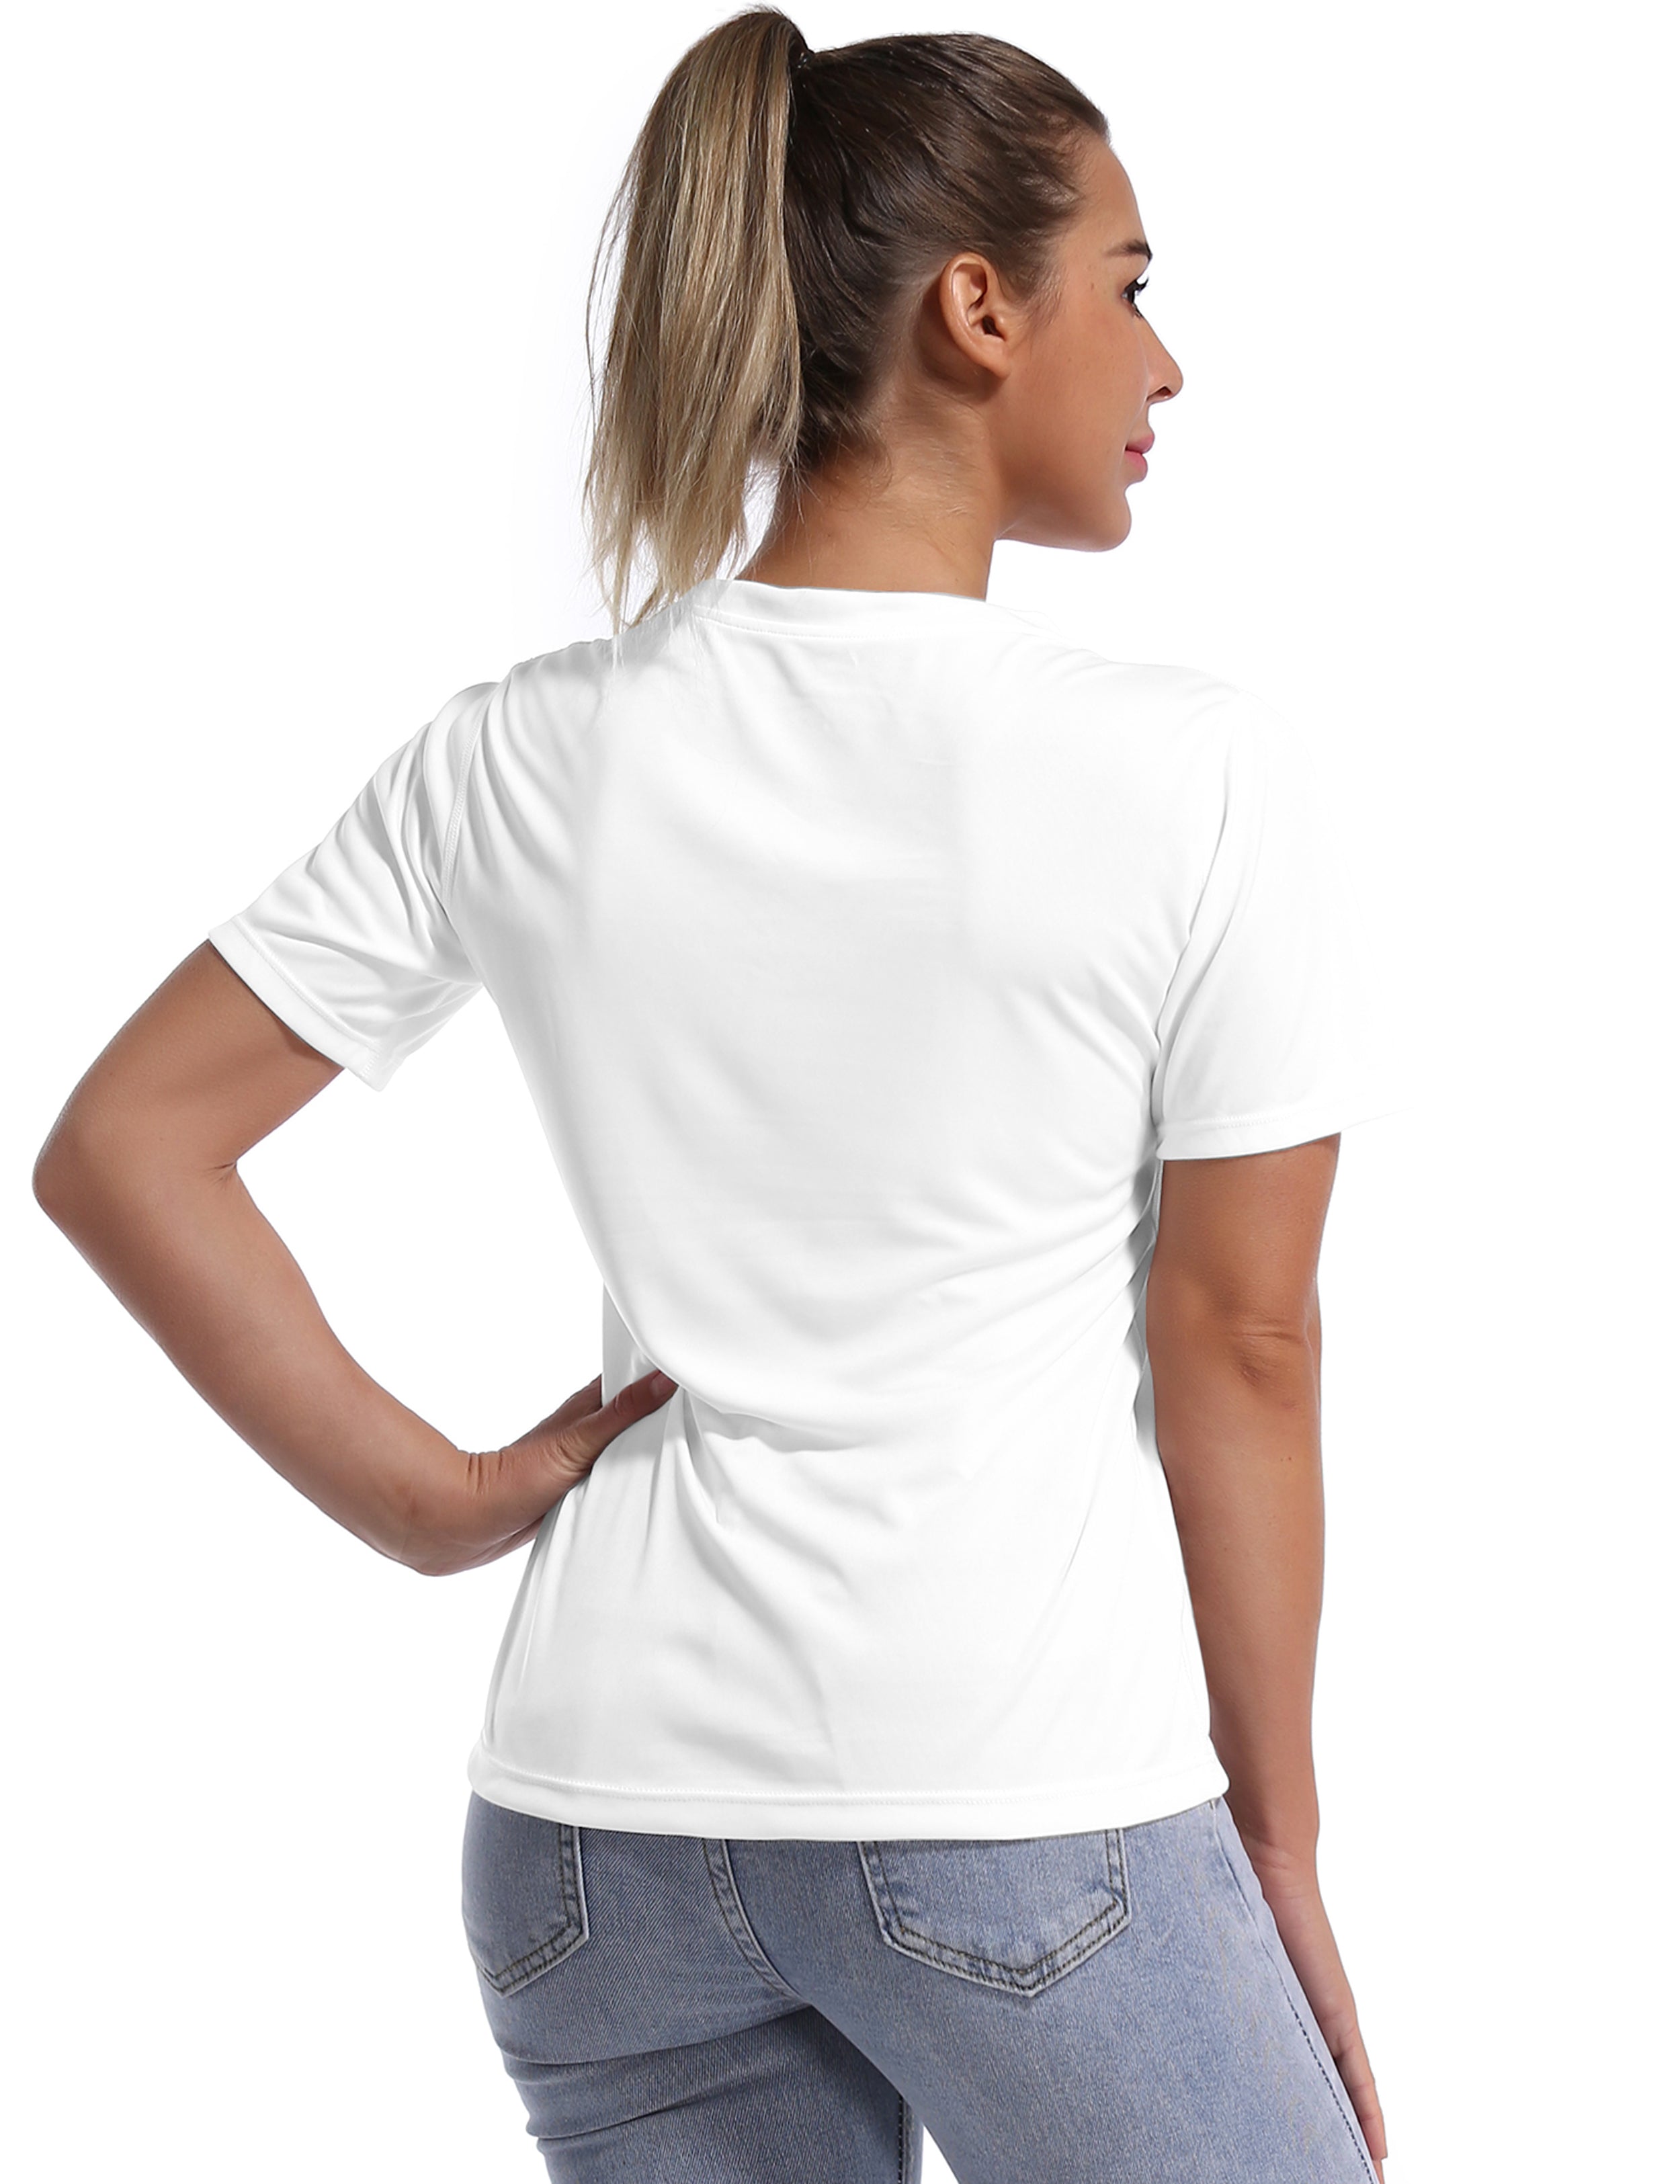 V-Neck Short Sleeve Athletic Shirts white_Biking